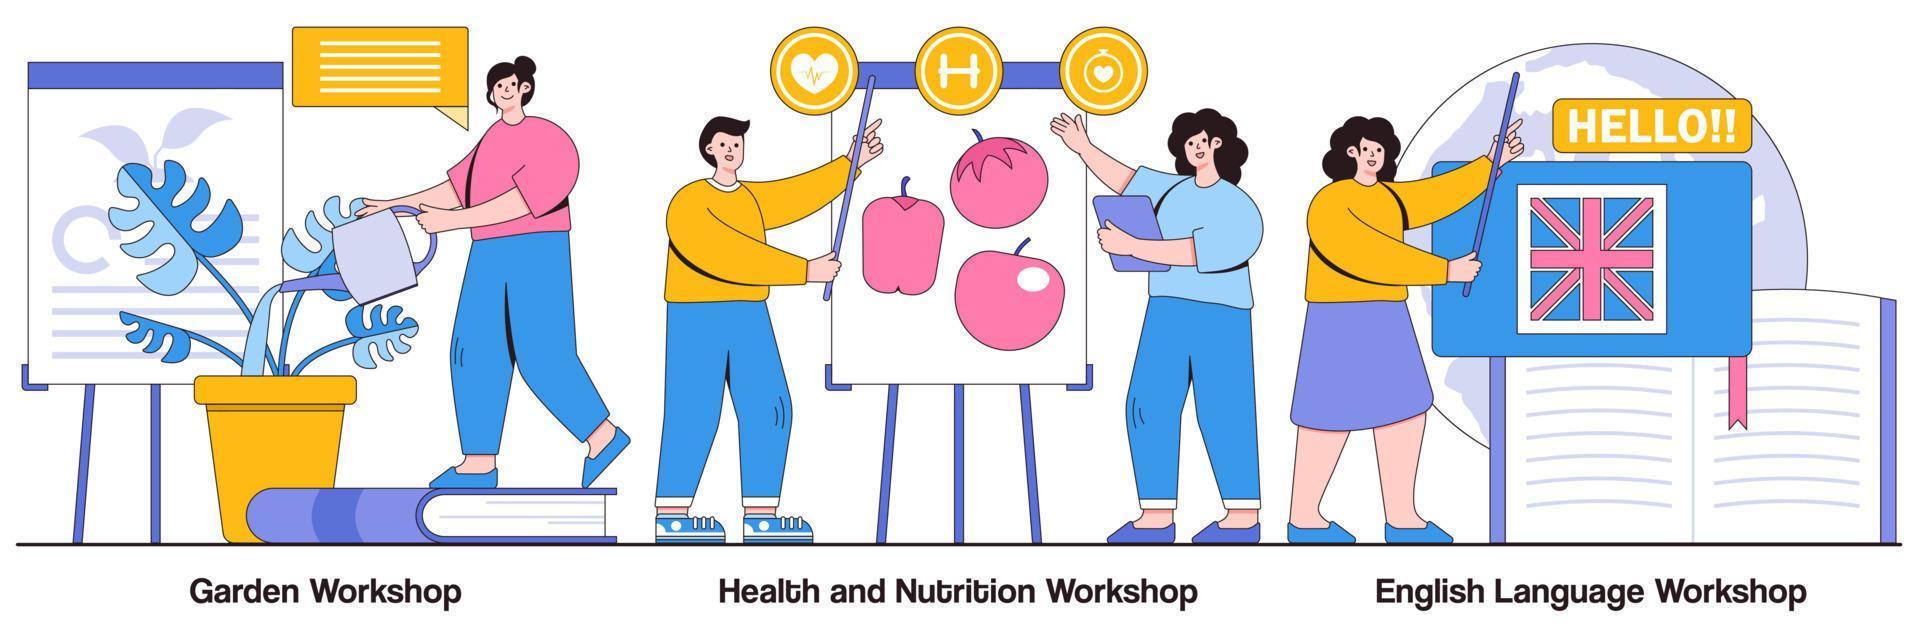 Garden Workshop, Health and Nutrition Workshop, Foreign Language Workshop Illustrated Pack vector